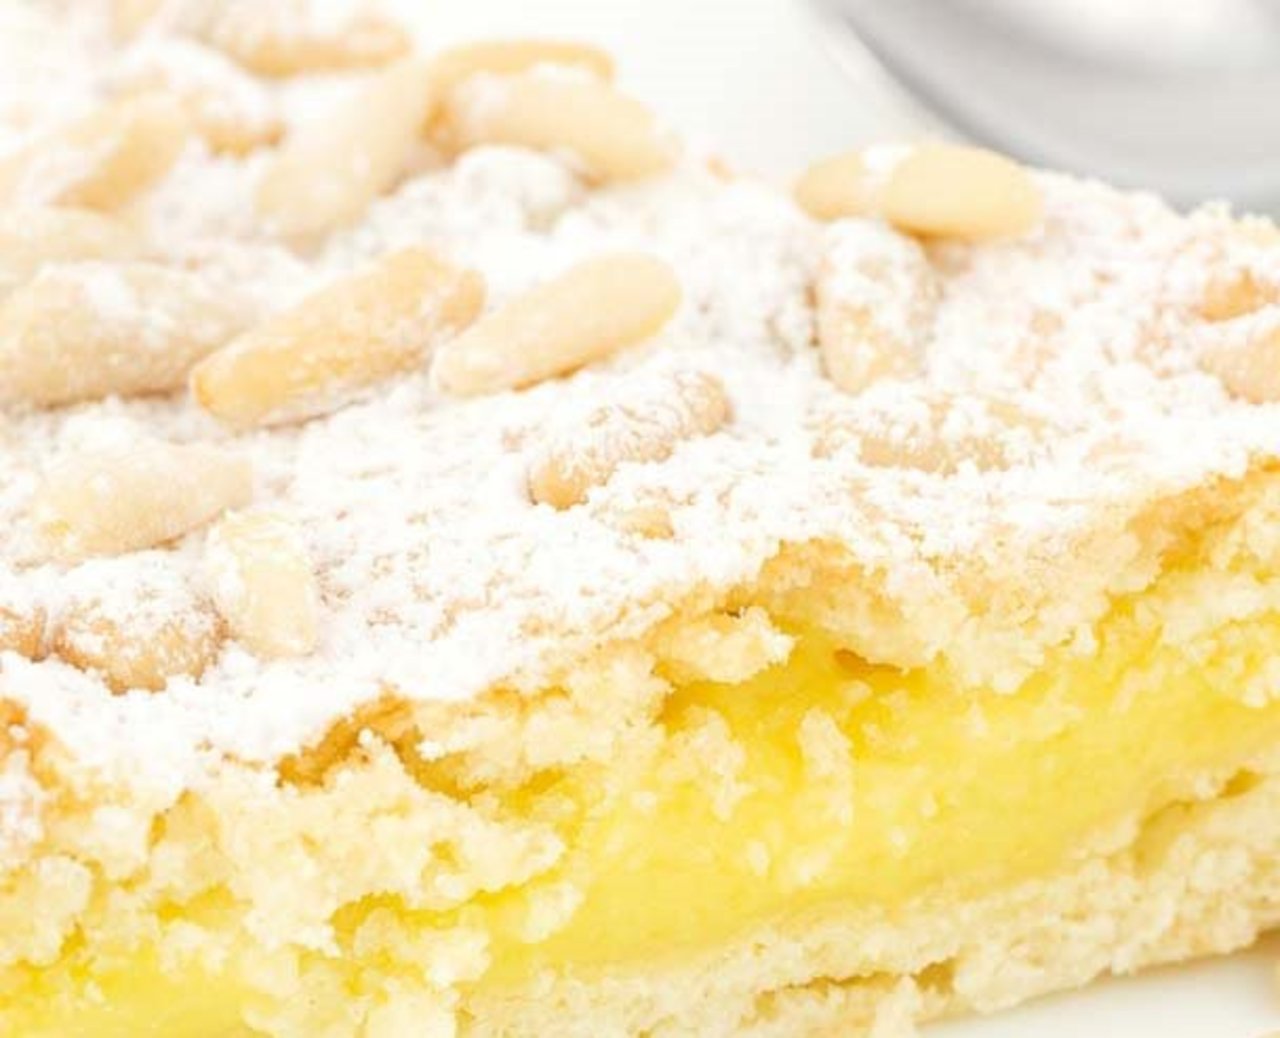 Torta della nonna - Grandma's #cake - A #recipe from #Tuscany just soo good https://invaldera.net/2014/09/19/torta-della-nonna/ https://t.co/VdVh429LoI